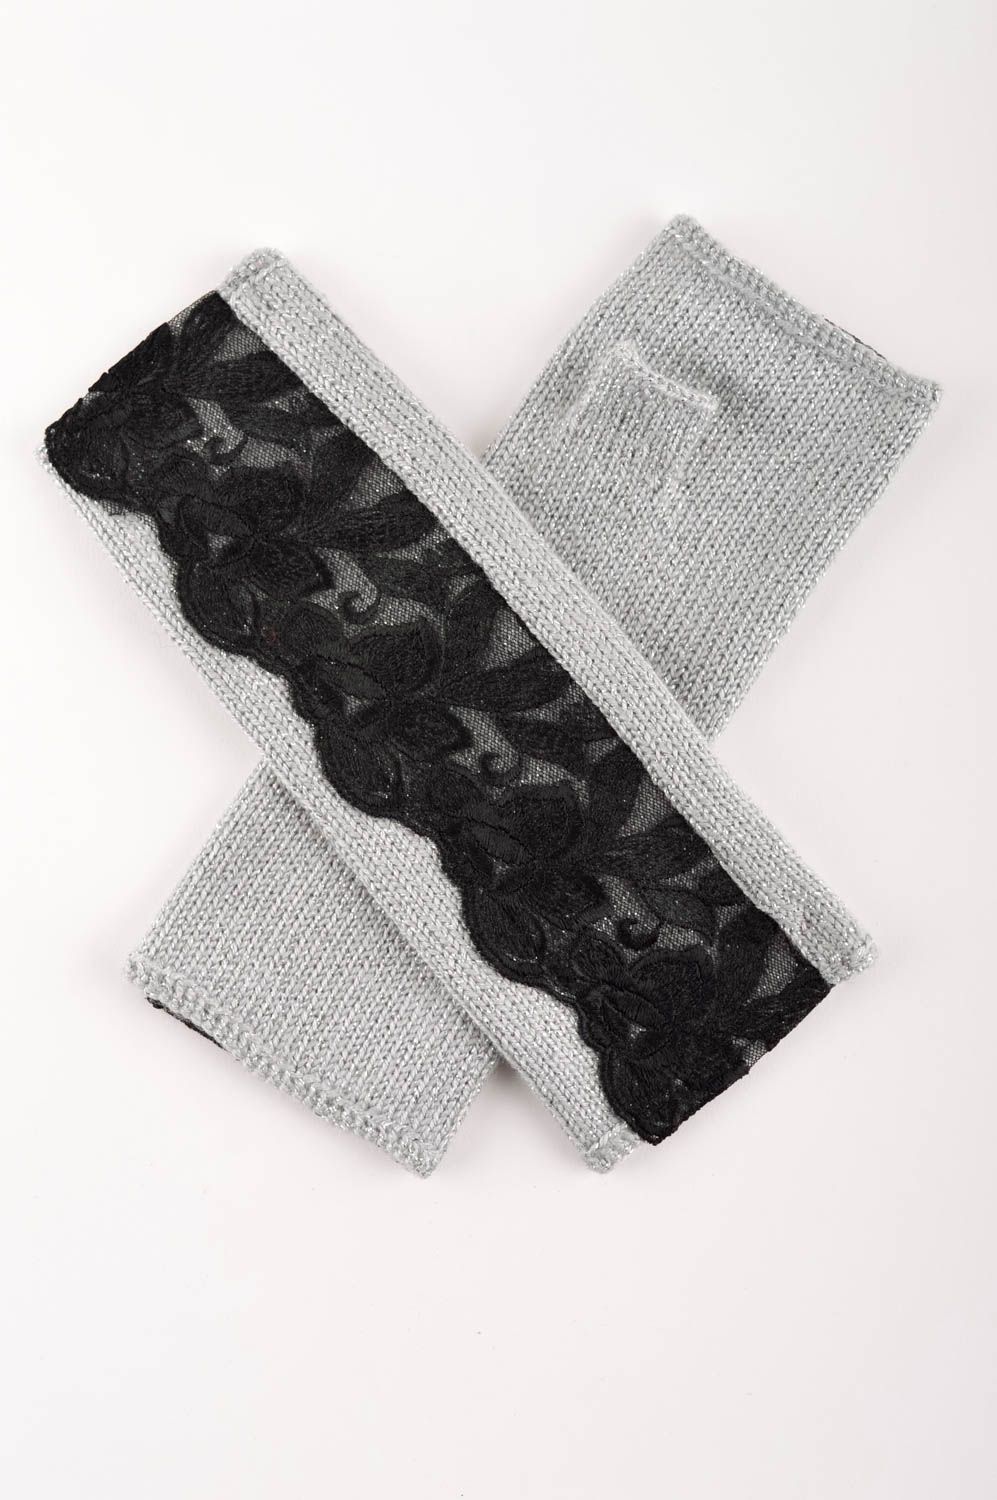 Mitones tejidos artesanales negros con gris accesorio de moda ropa femenina foto 1